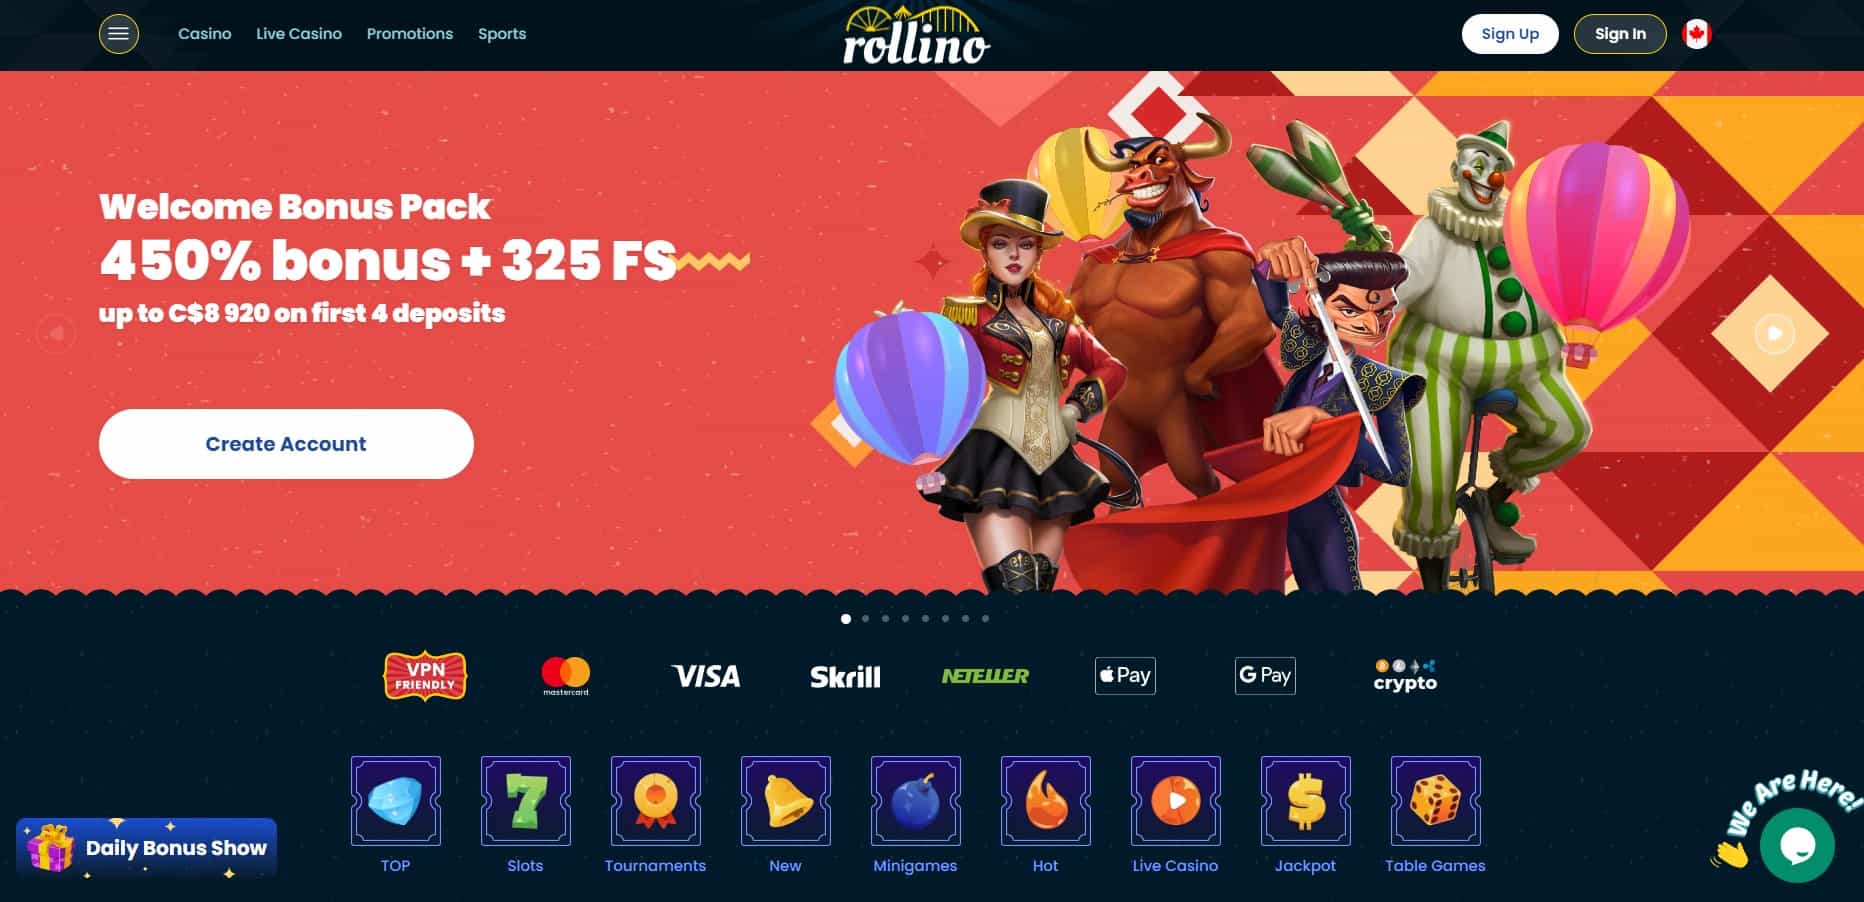 rollino casino main page